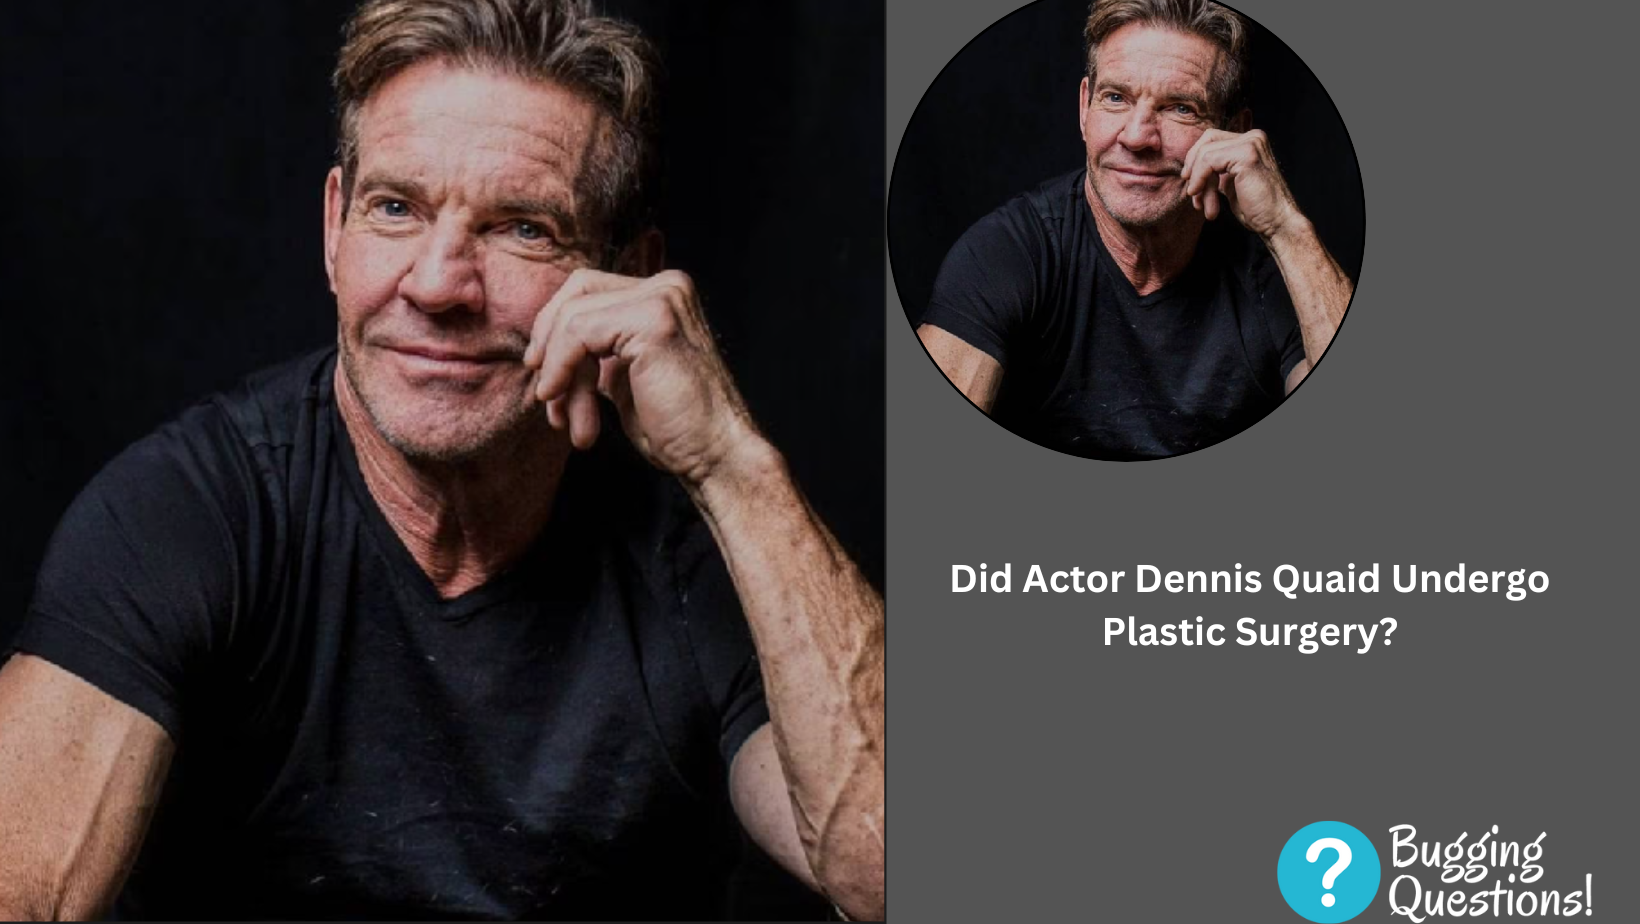 Did Actor Dennis Quaid Undergo Plastic Surgery?